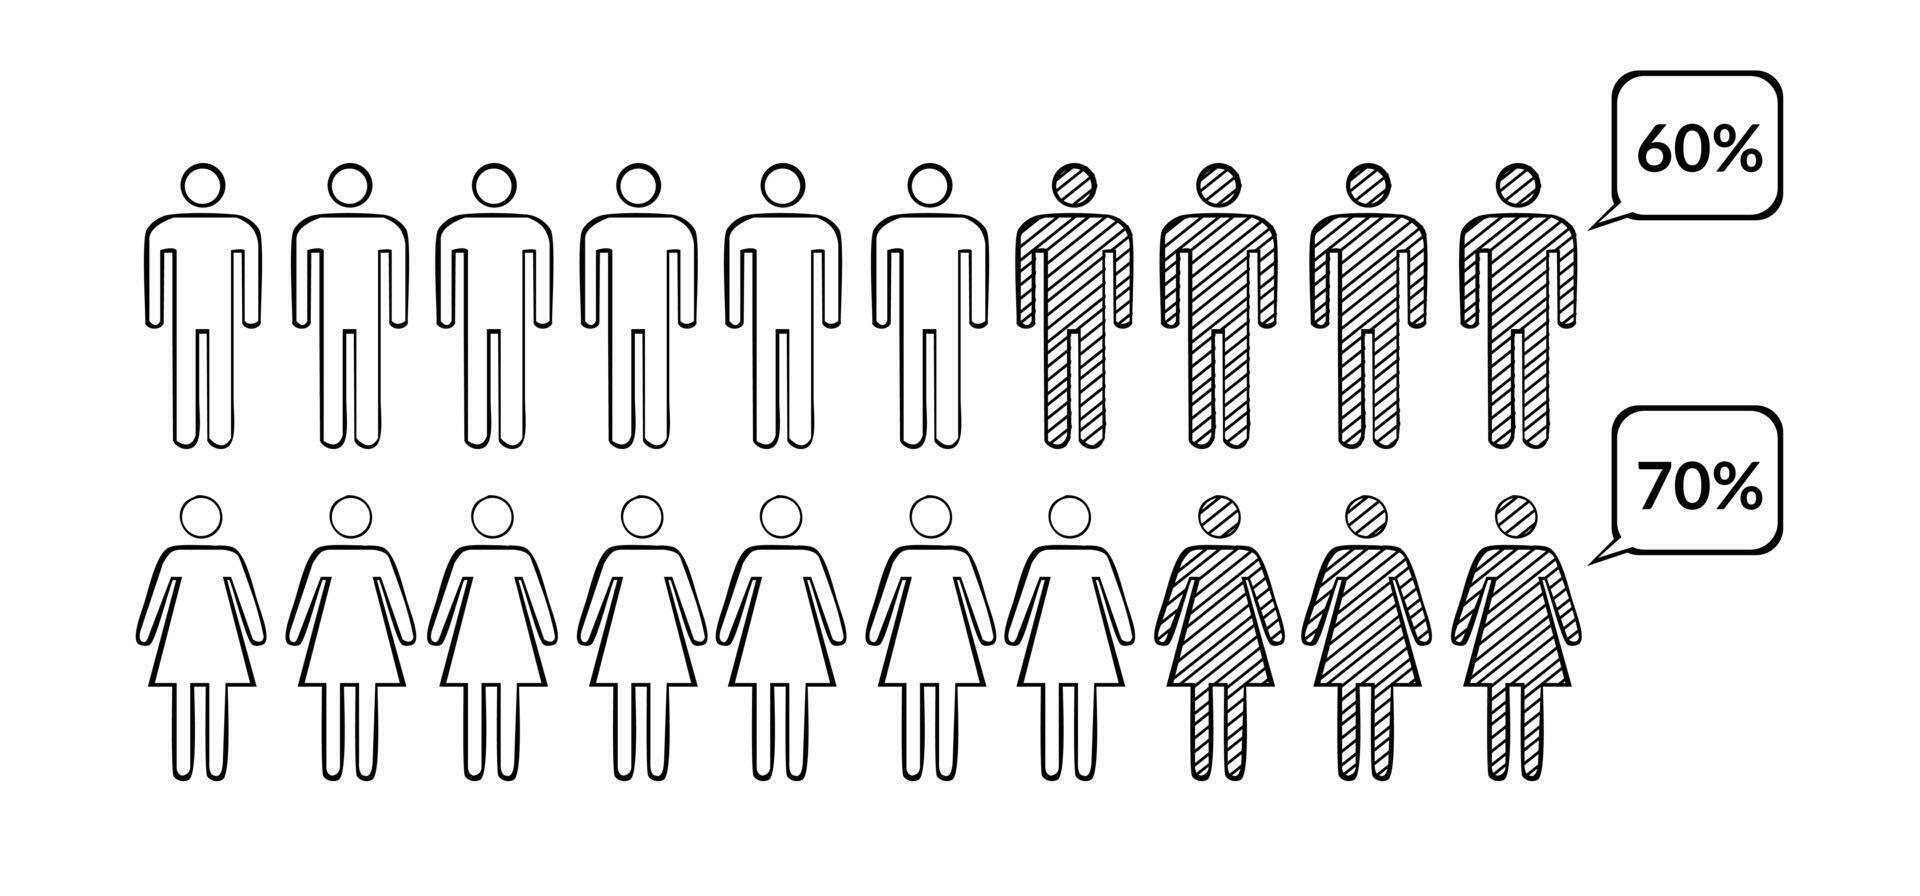 människor procentsats infographic begrepp illustration i de form av en man och kvinna. skisse i svart och vit. vektor